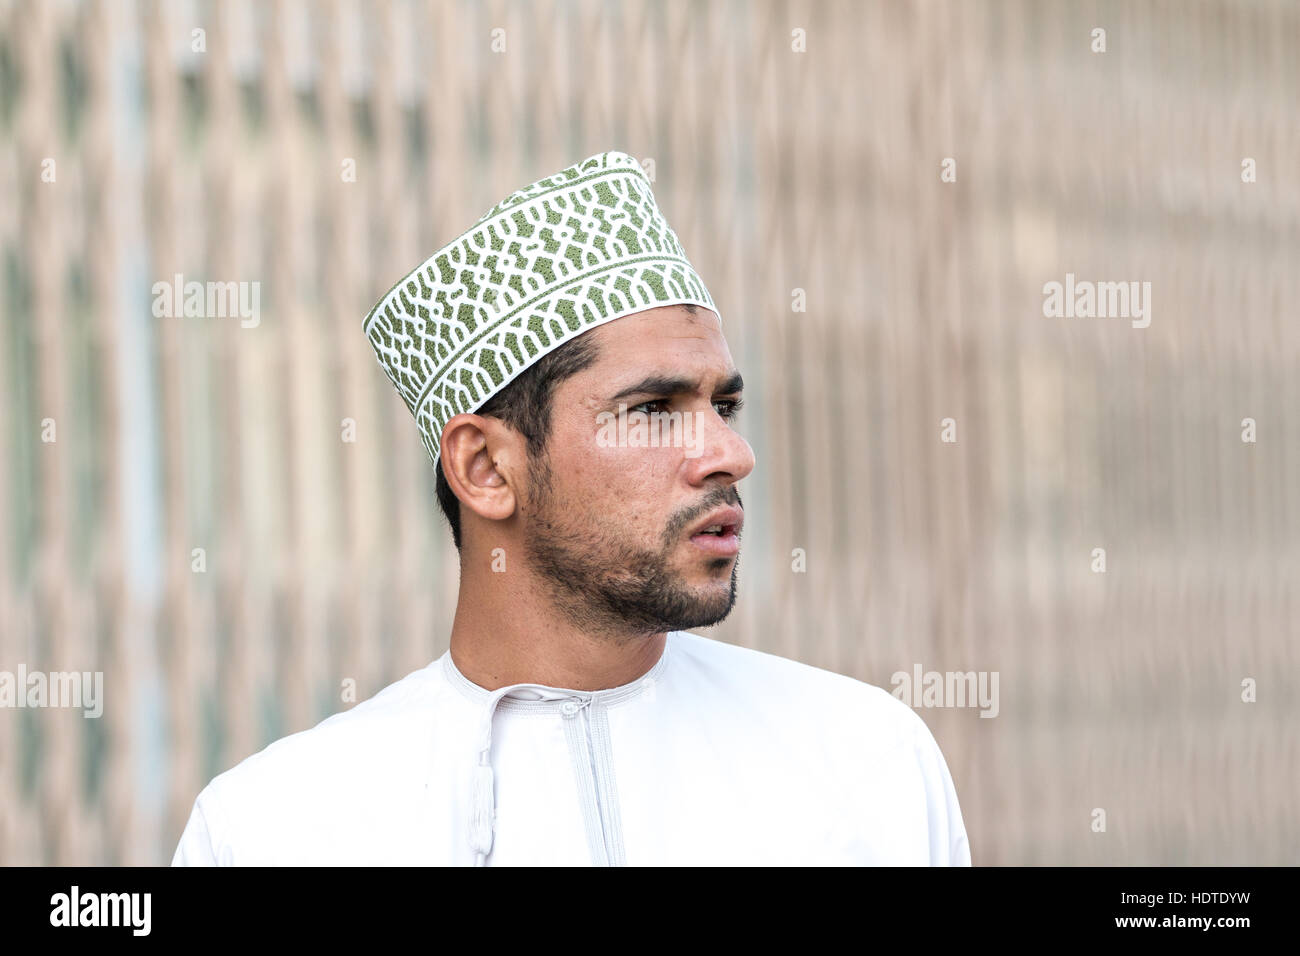 Porträt eines omanischen Mannes im omanischen Trachten, die Teilnahme an einem Freitagsmarkt. Stockfoto